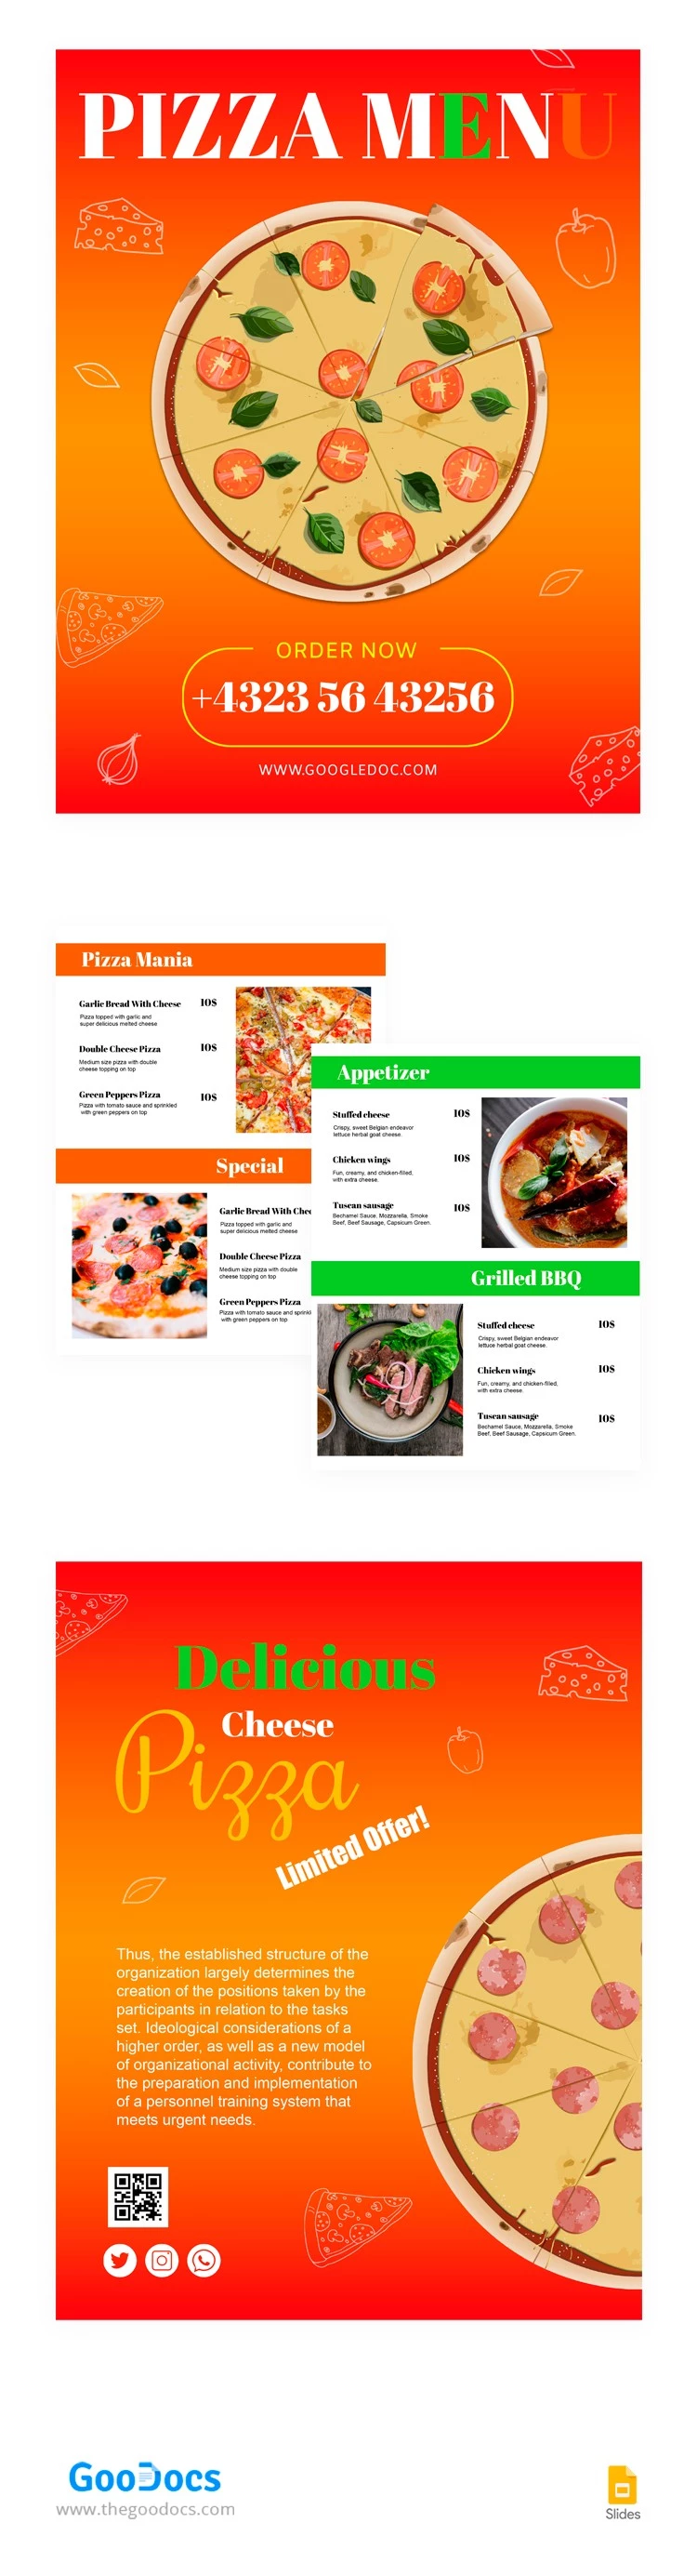 Menu del ristorante italiano di pizza. - free Google Docs Template - 10063587